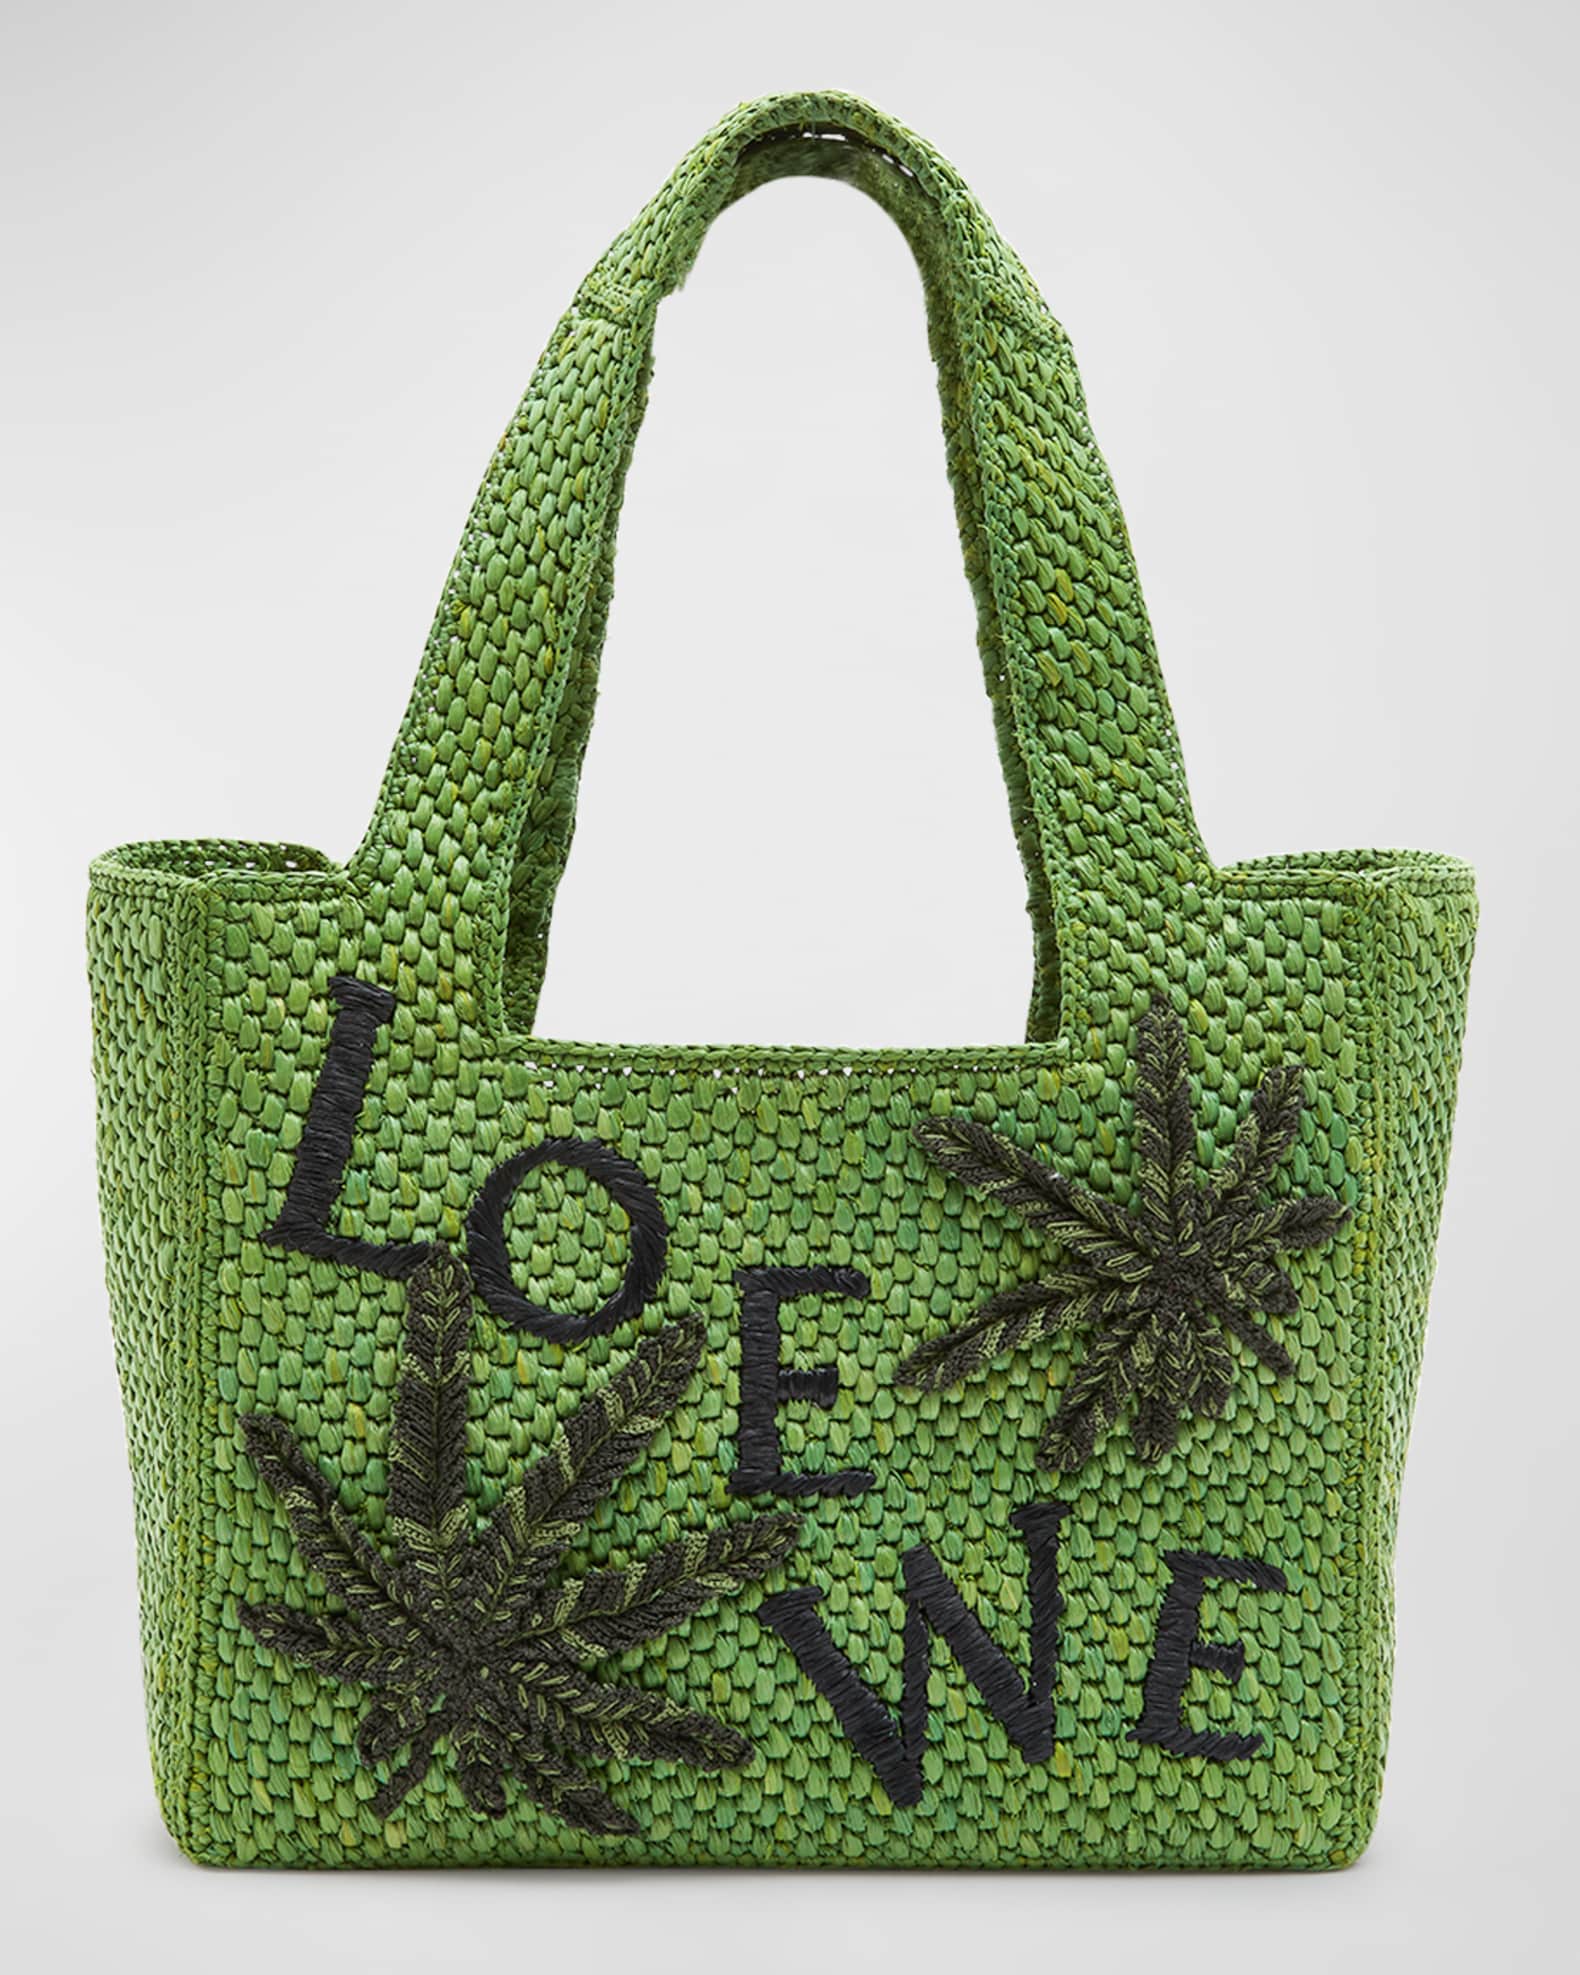 Paulas Ibiza Fold Basket Bag in Beige - Loewe